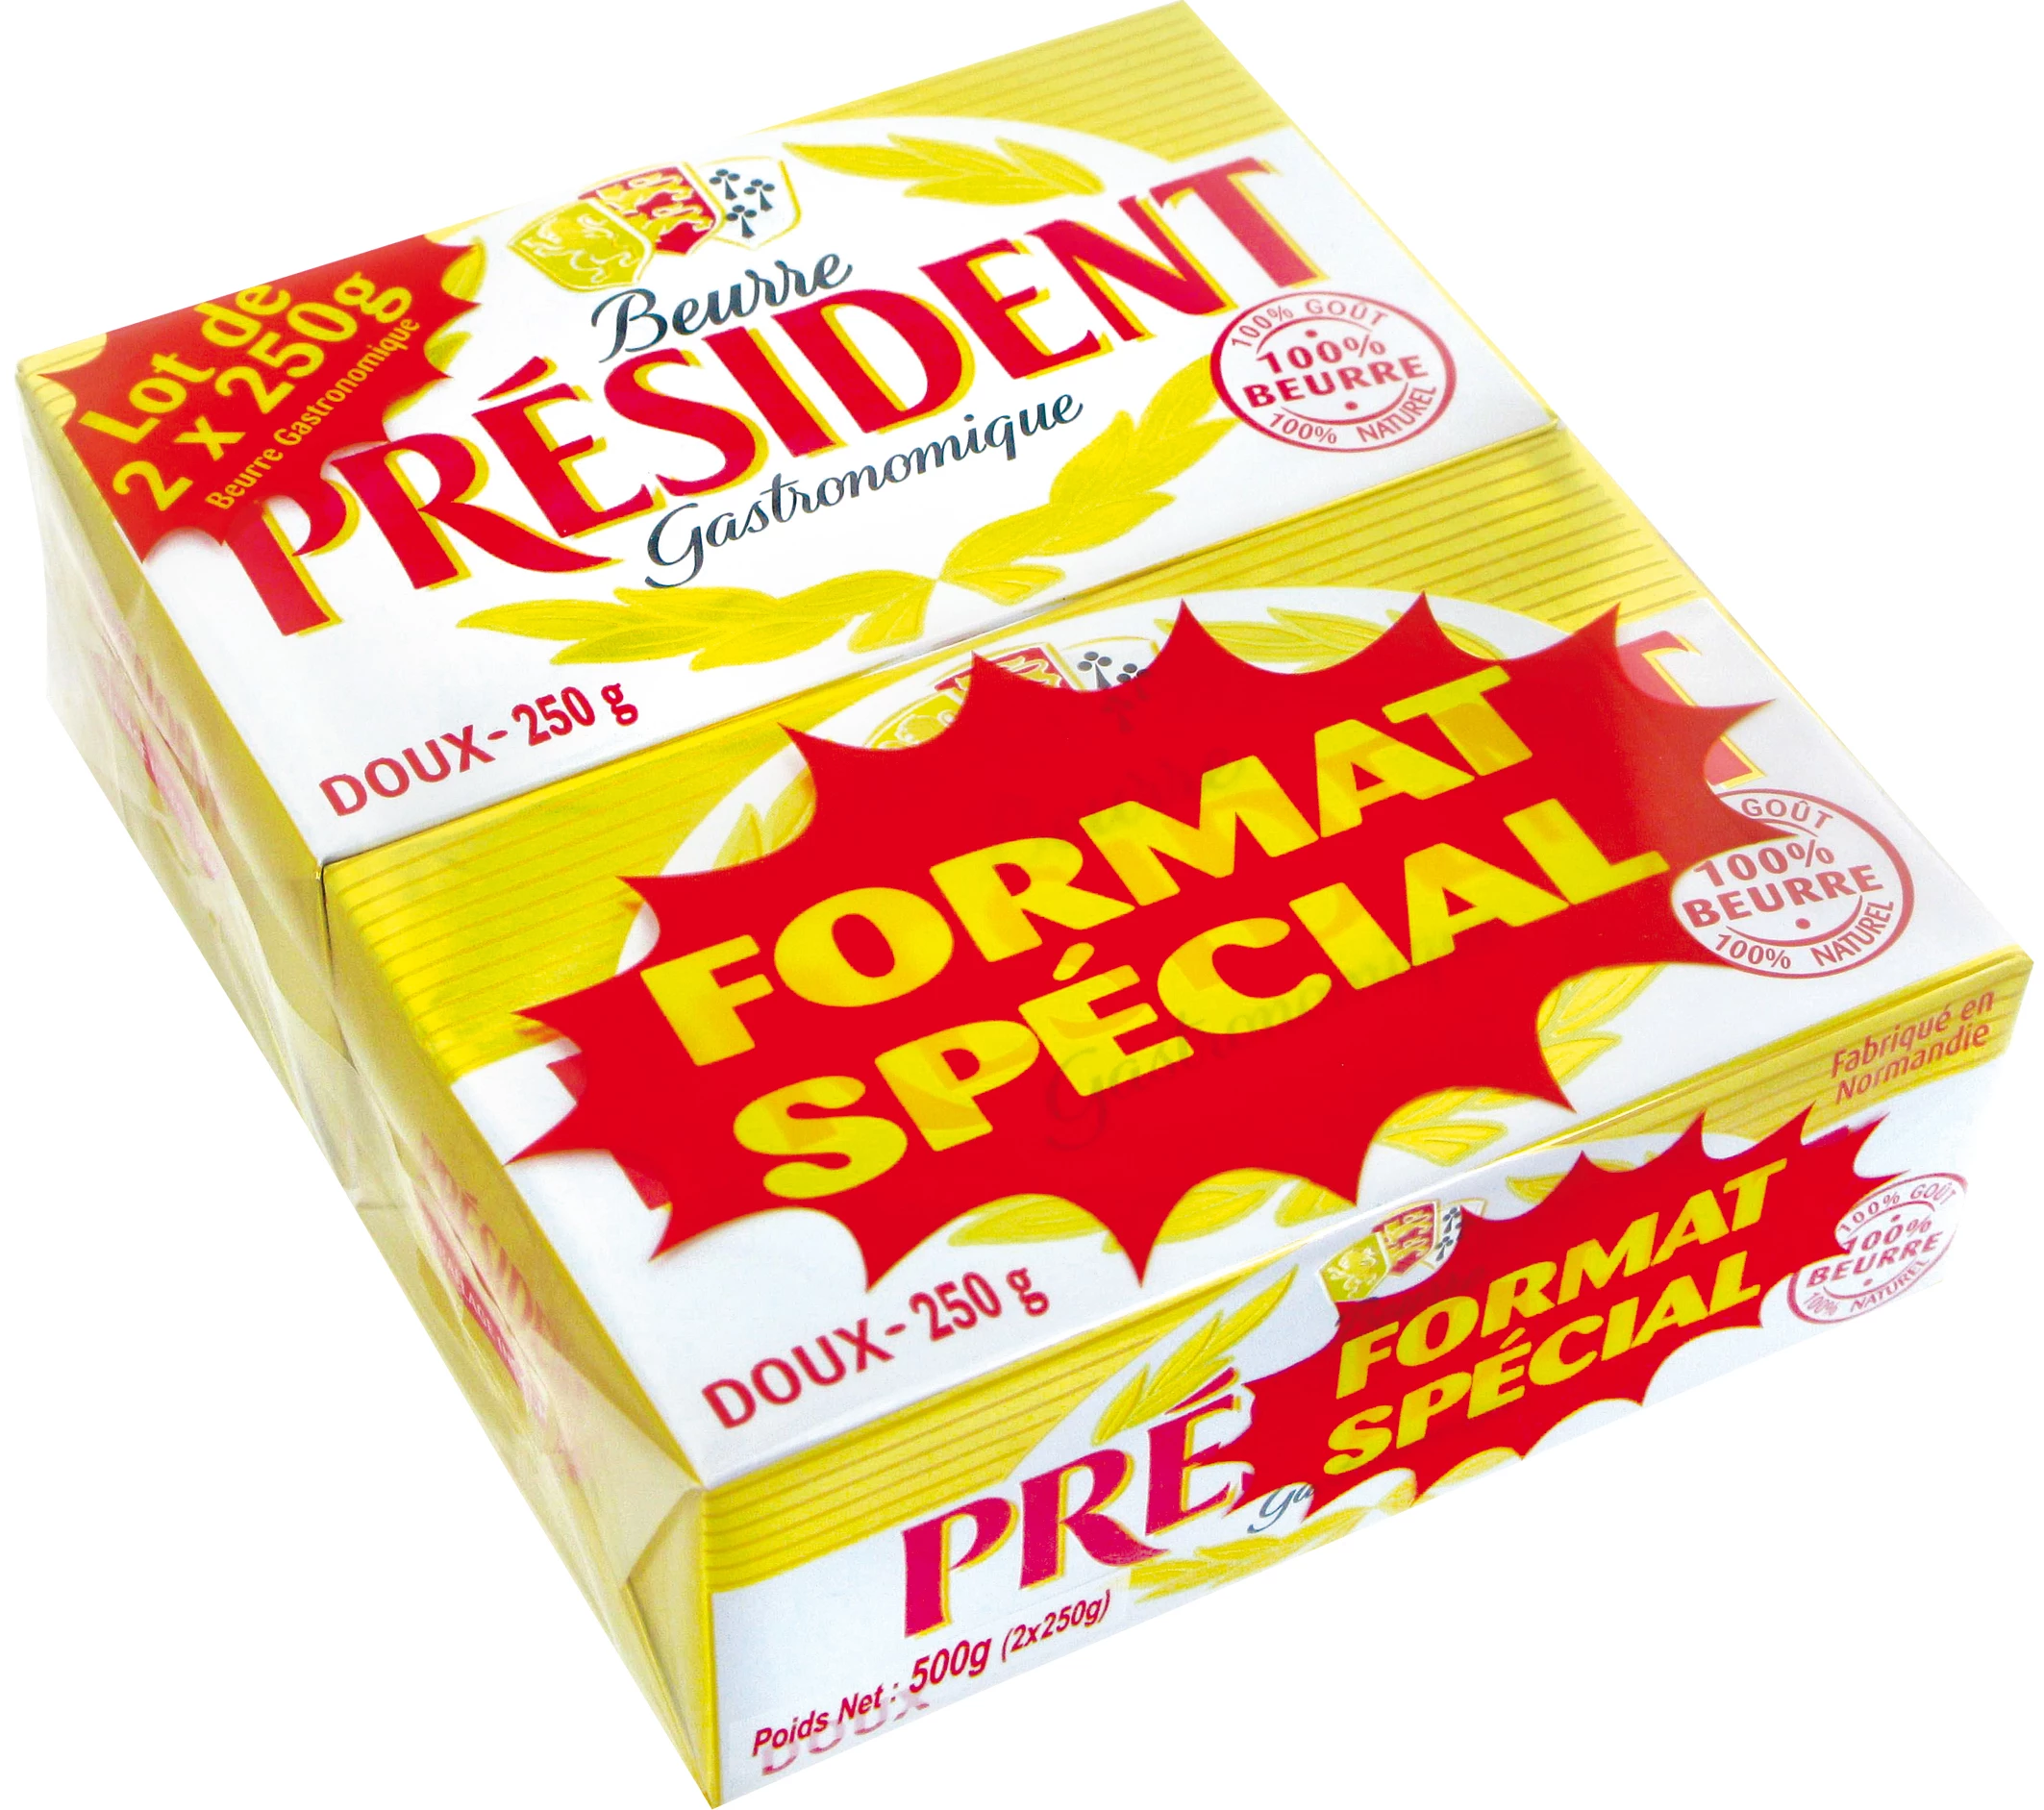 Beurre doux beurrier, Président (250 g)